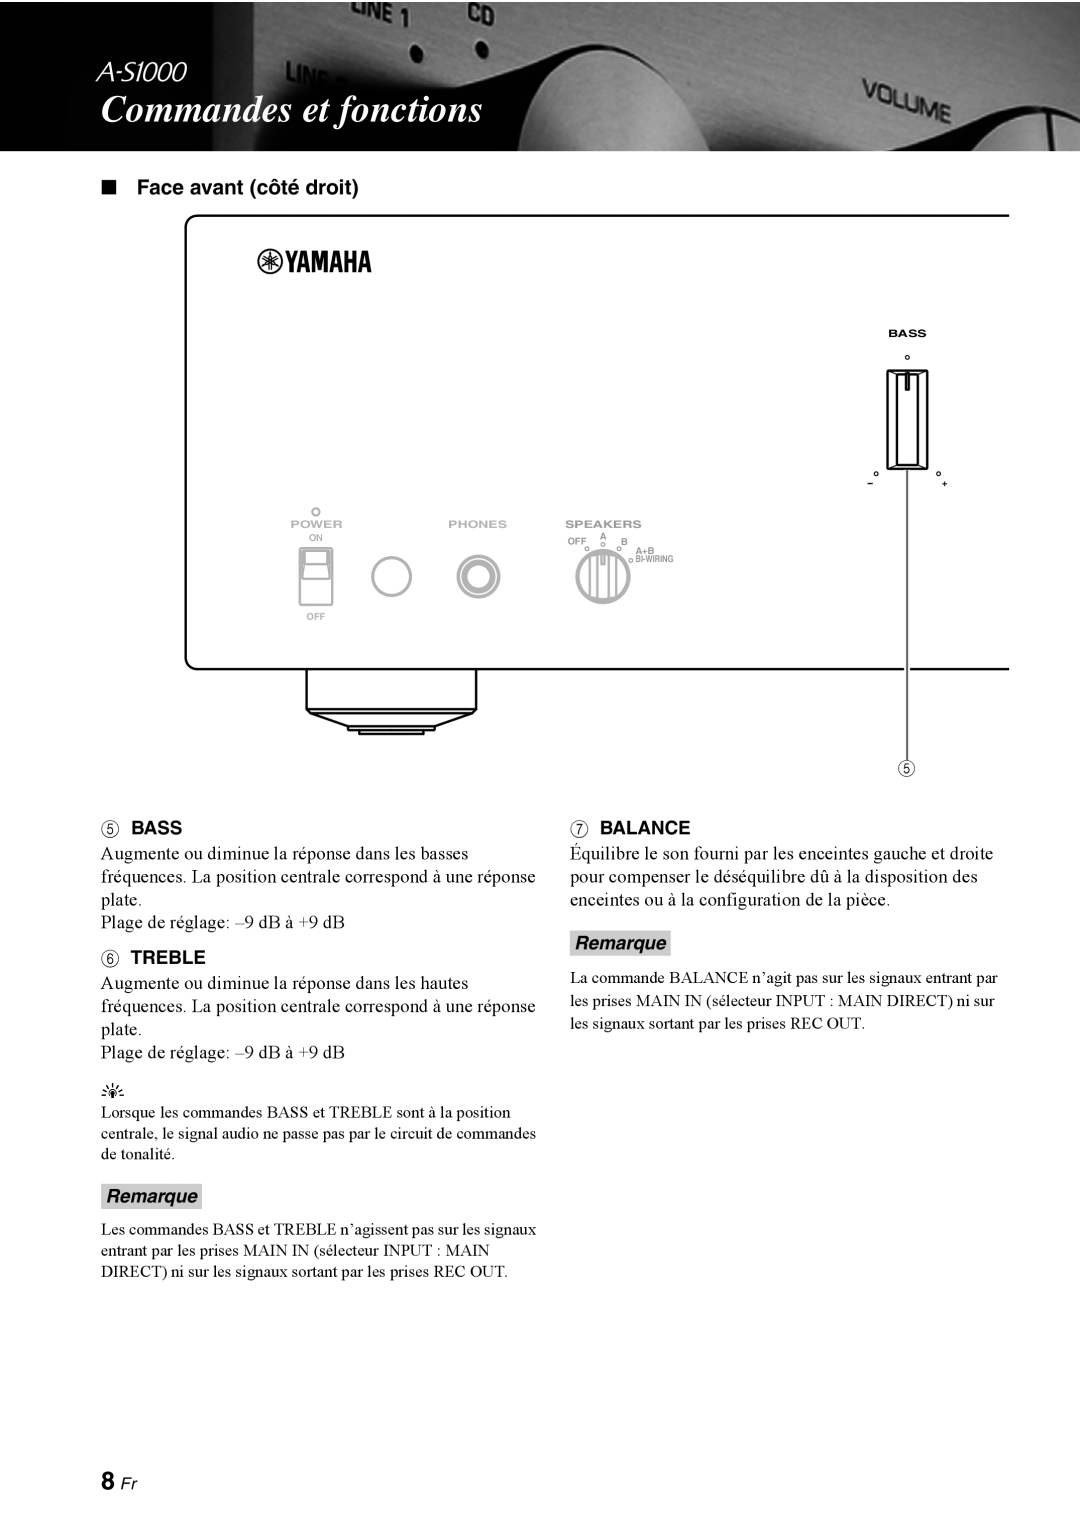 Yamaha A-S1000 owner manual 8 Fr, Face avant côté droit, Commandes et fonctions, Remarque 